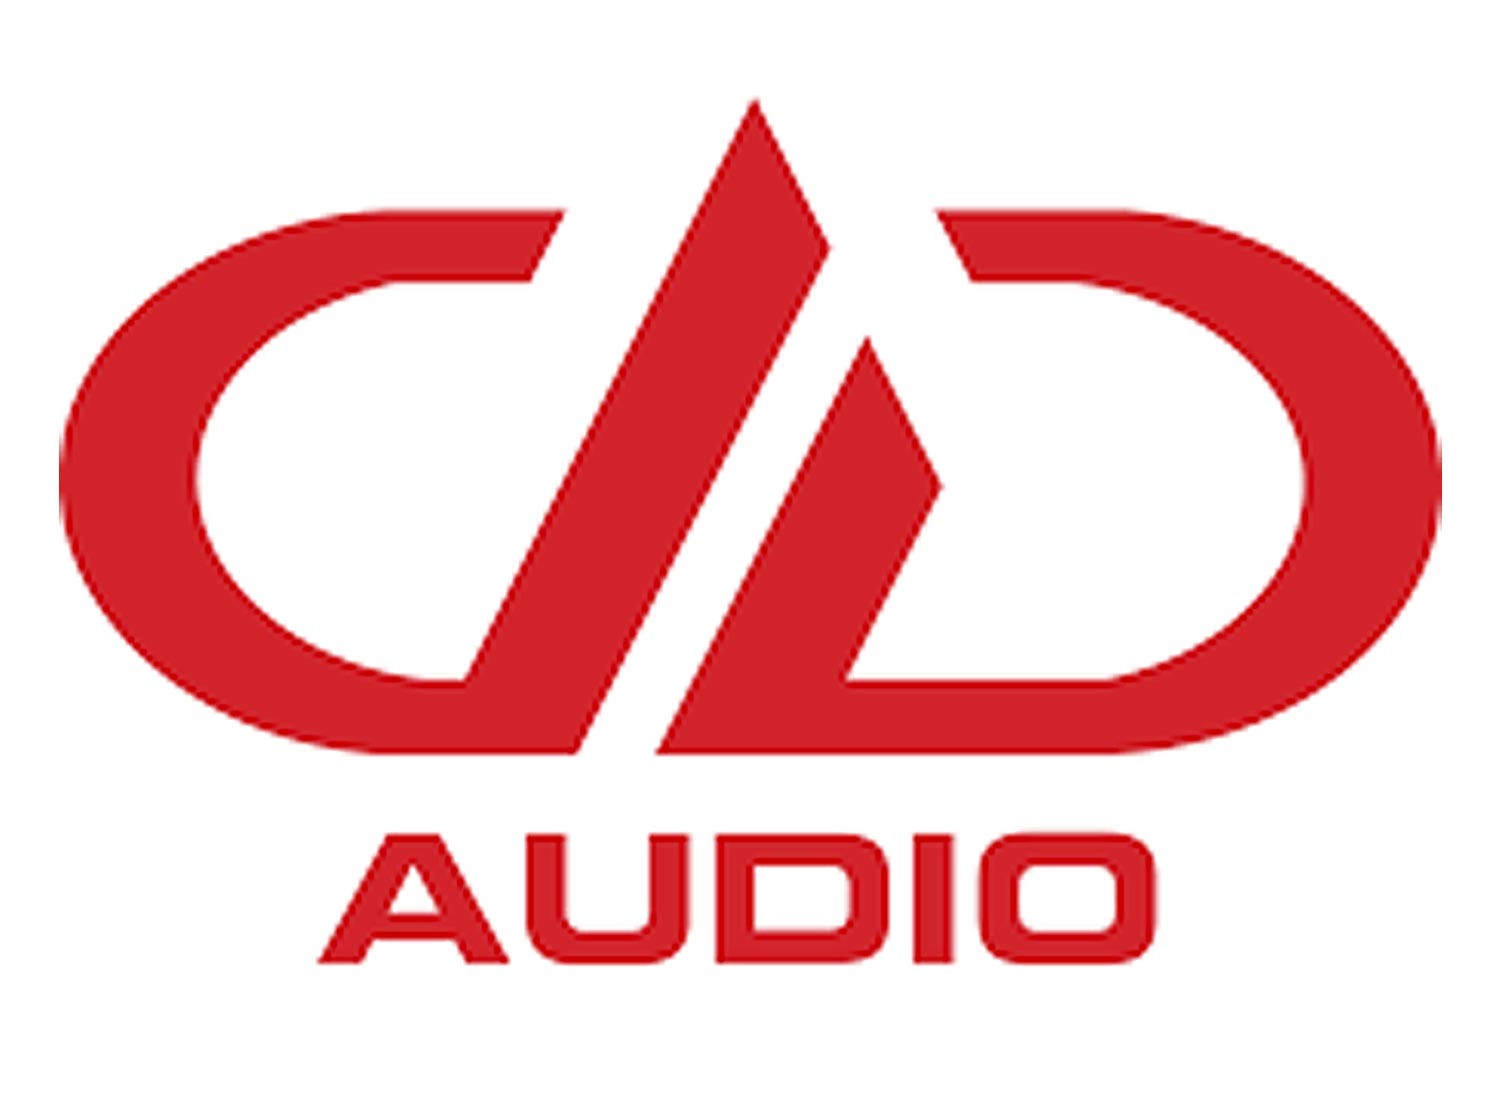 Dd Audio